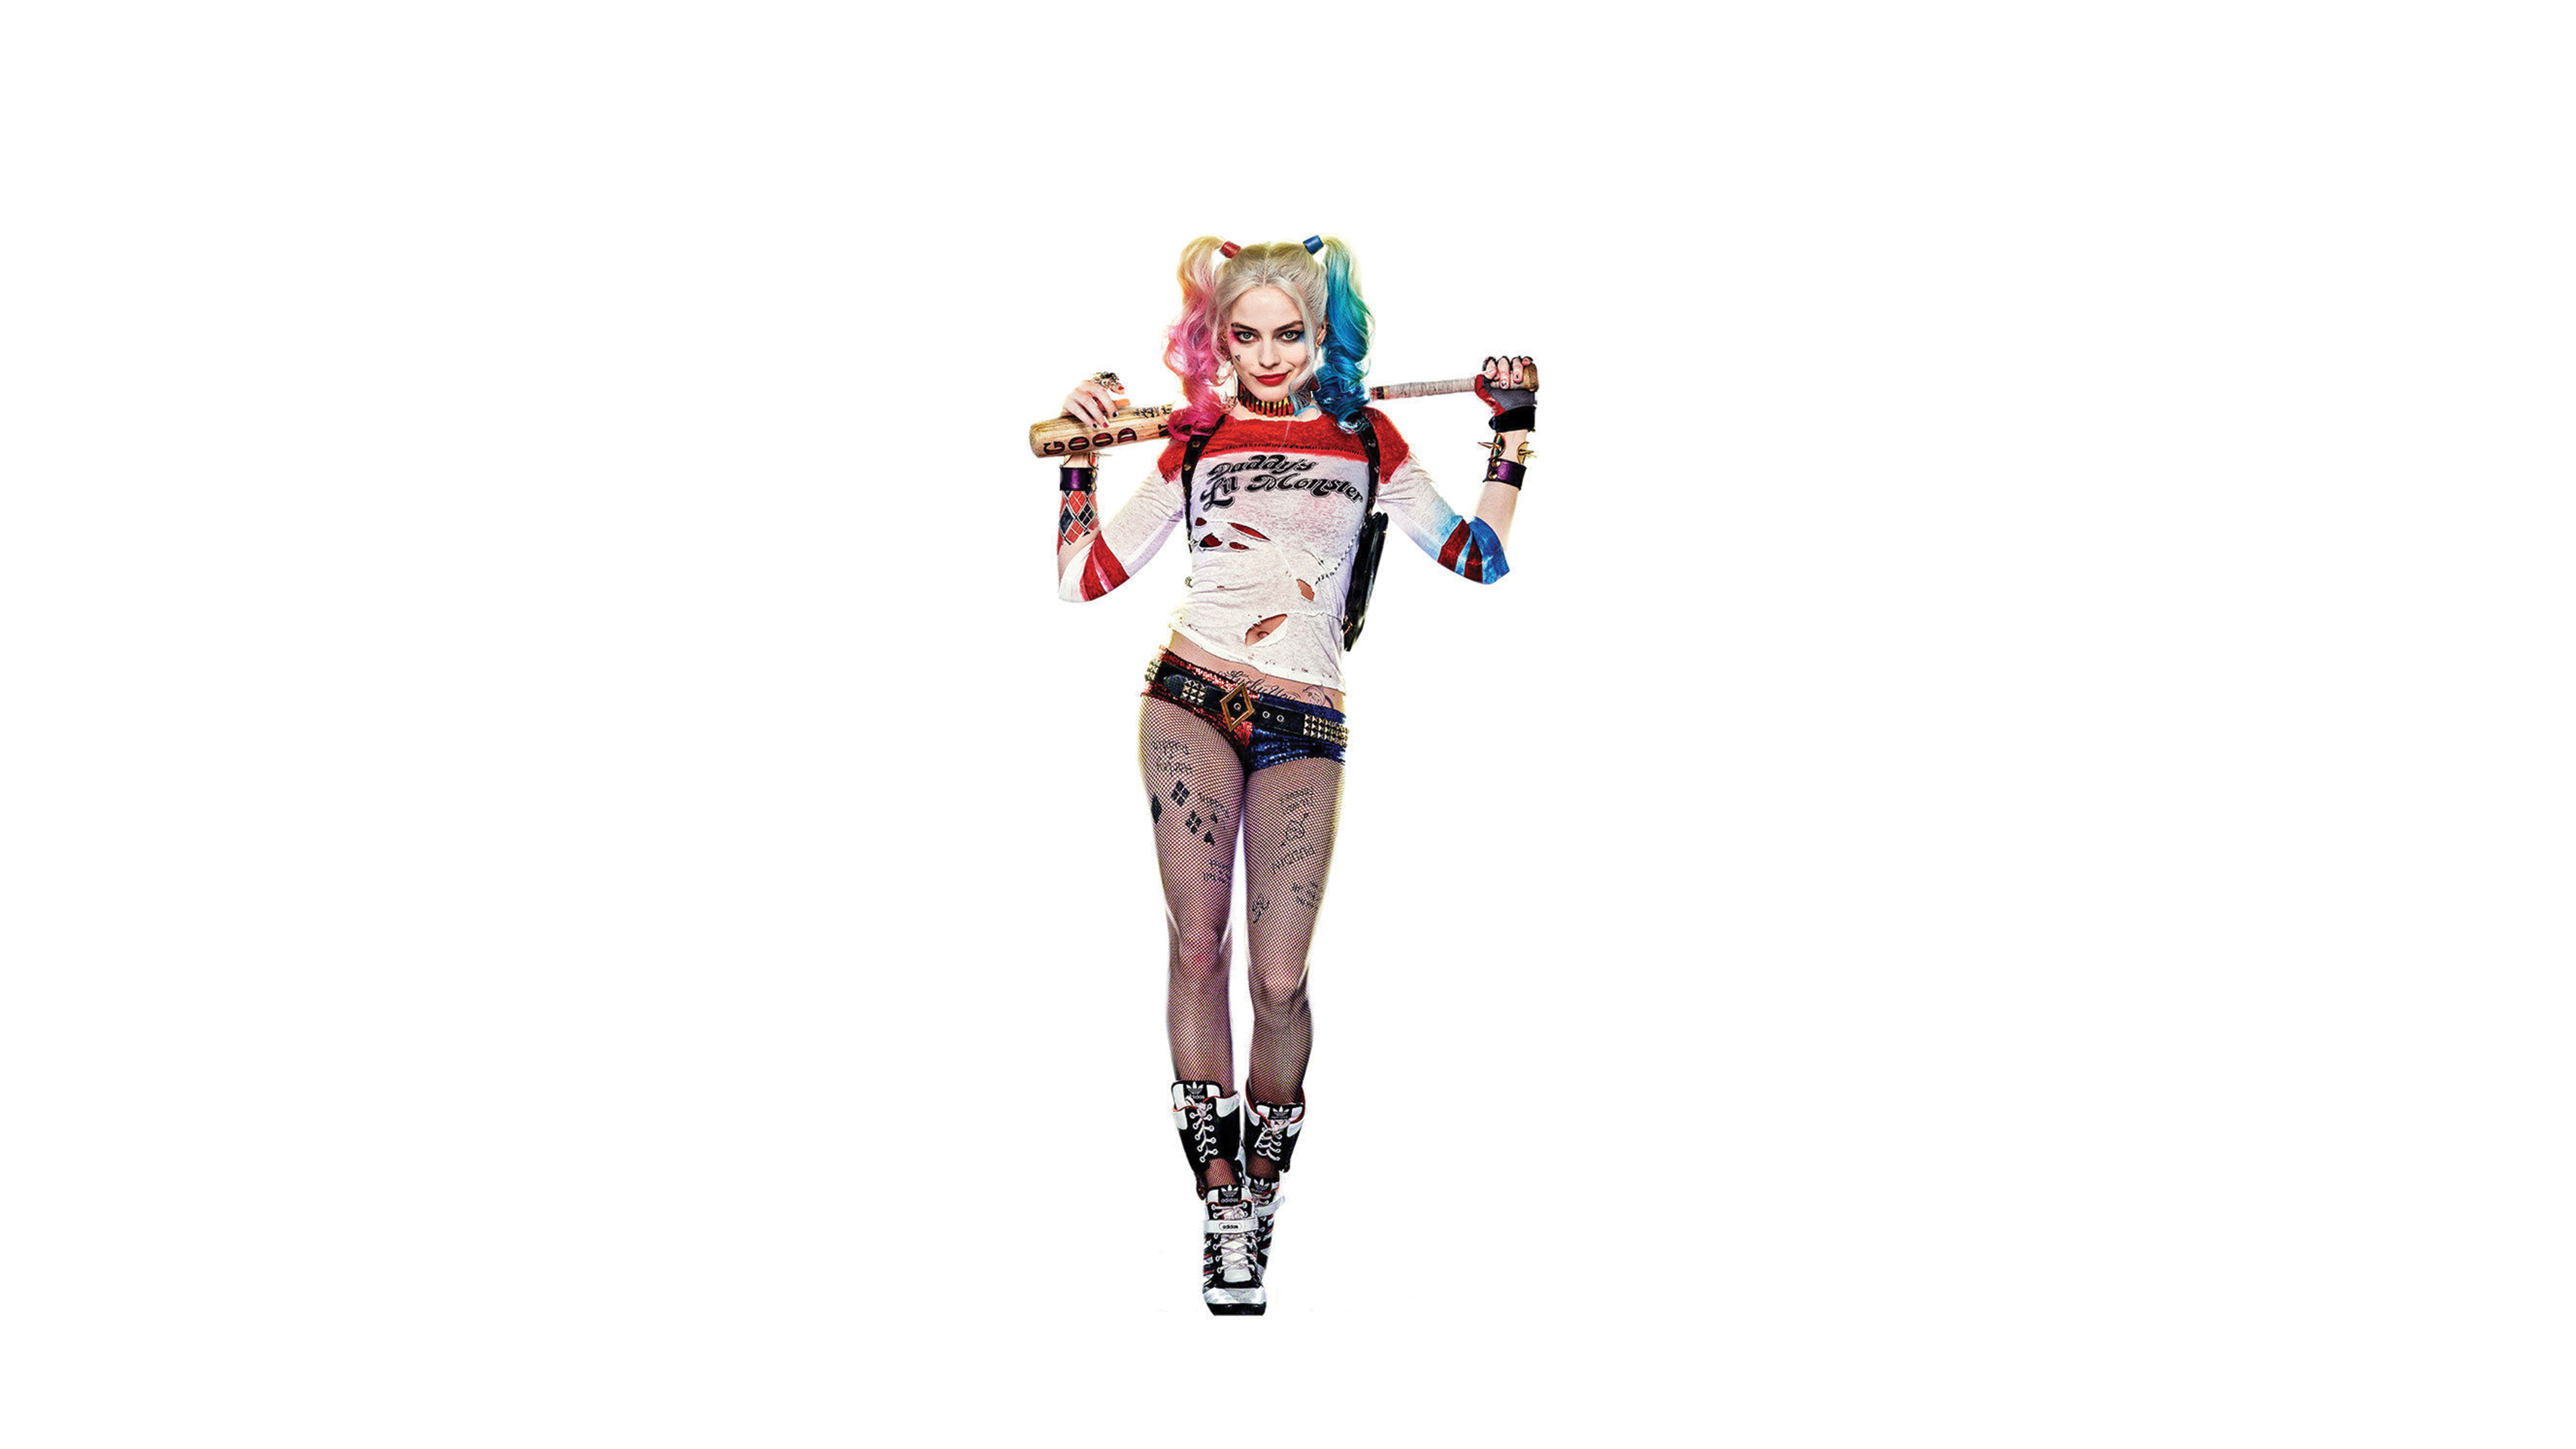 Những bộ phim Harley Quinn 4k đầy màu sắc sẽ làm say mê bất cứ ai yêu thích siêu anh hùng! Không chỉ nổi tiếng với diễn xuất xuất sắc, nữ hoàng Joker còn được trang bị những pha hành động tuyệt vời mà bạn sẽ không muốn bỏ lỡ.